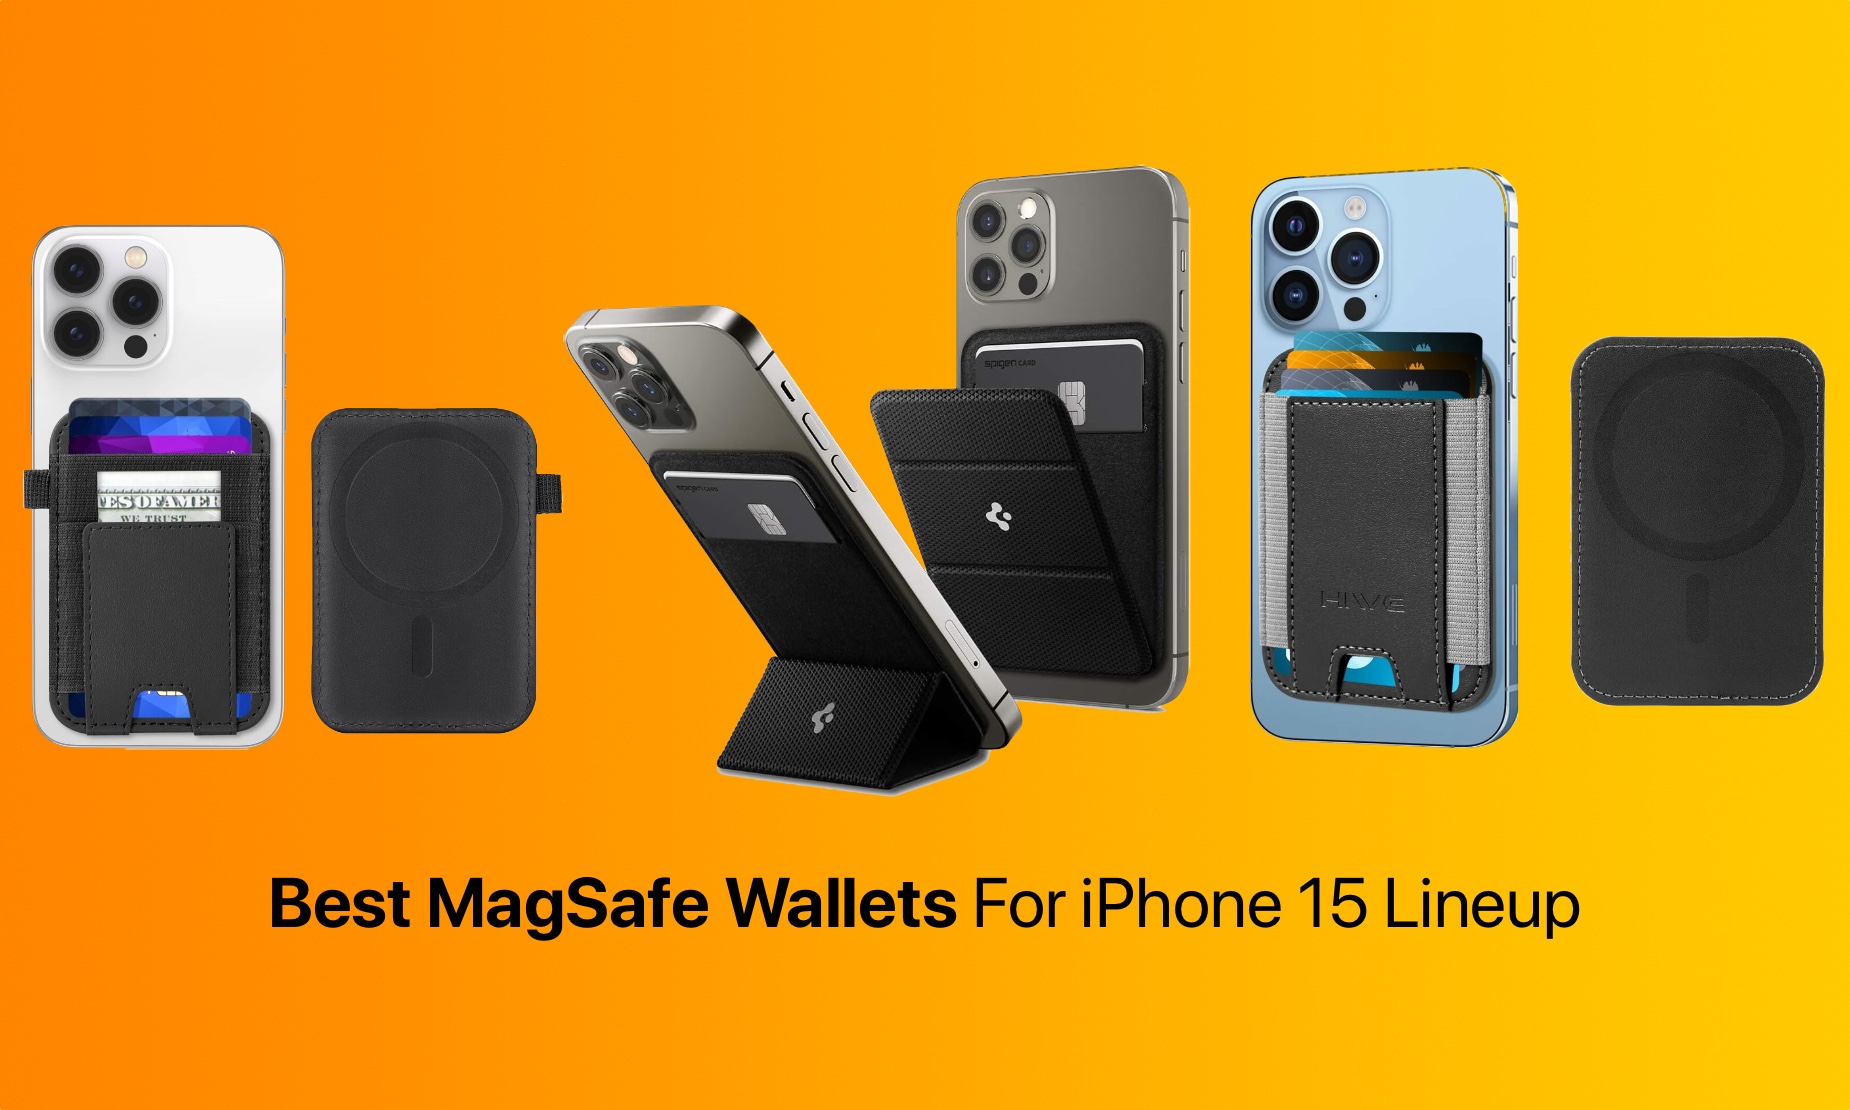 Spigen Smart Fold Card Holder and Stand, MagSafe Wallet vs Apple Wallet